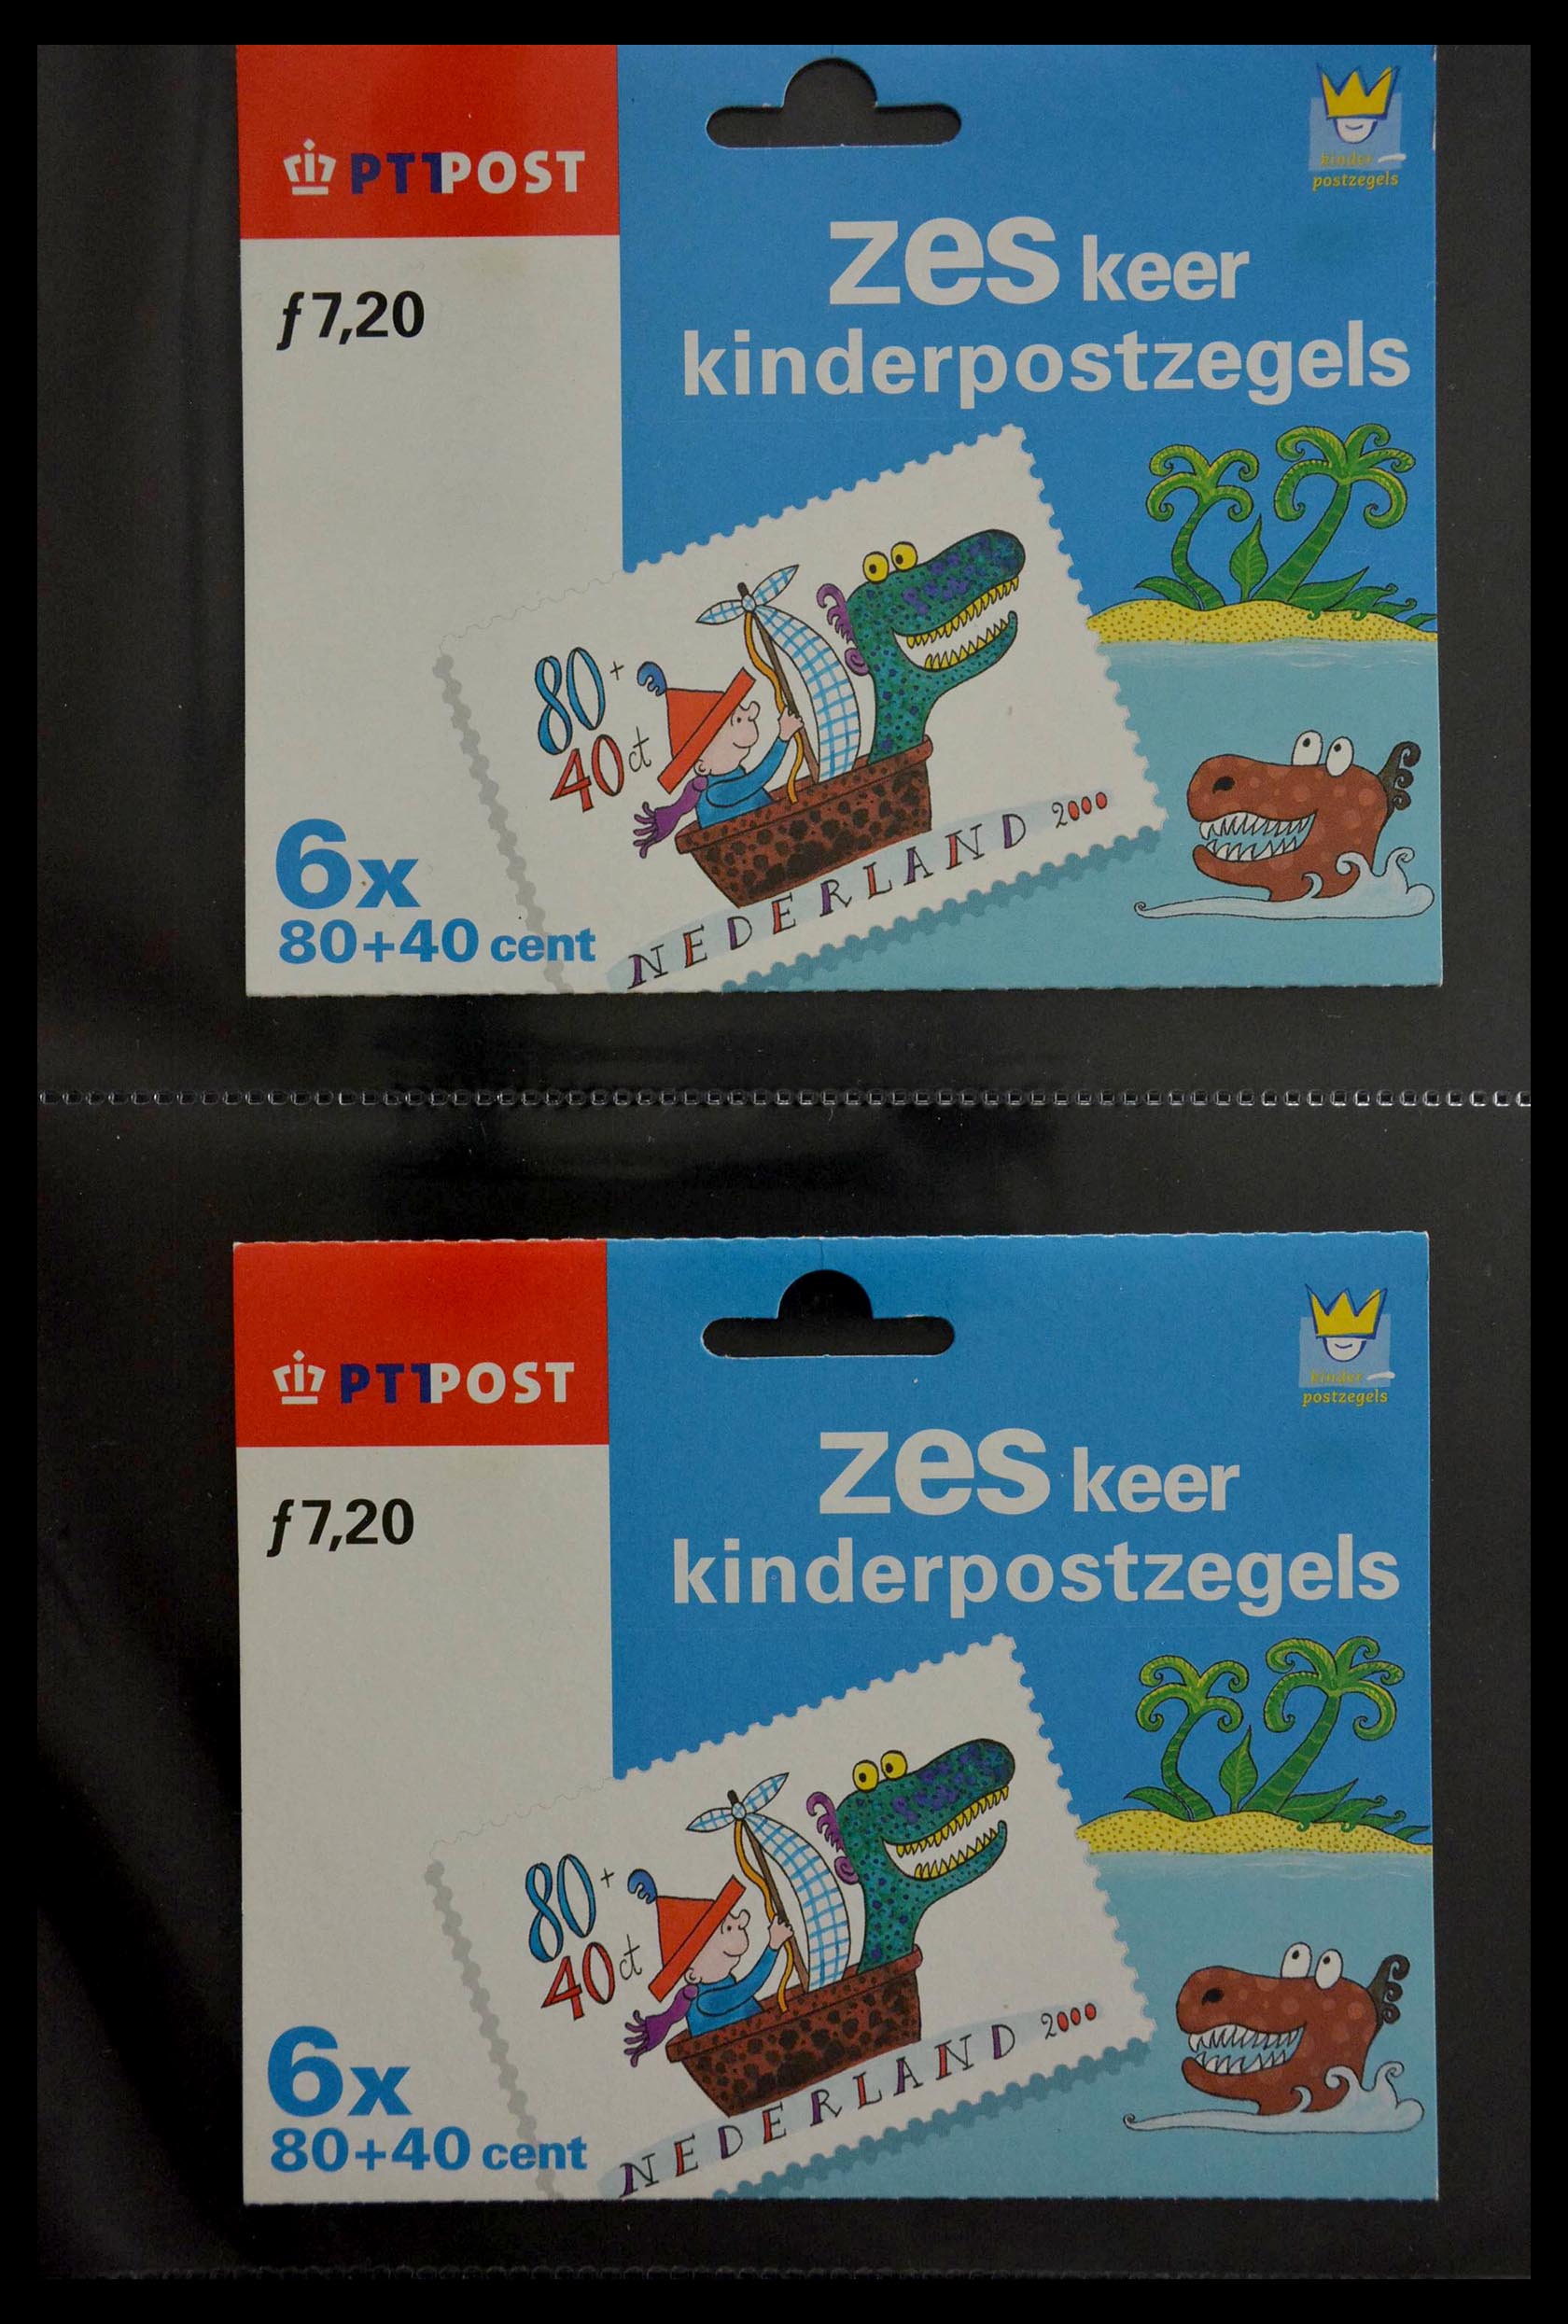 28888 114 - 28888 Nederland hangmapjes 1997-2008.